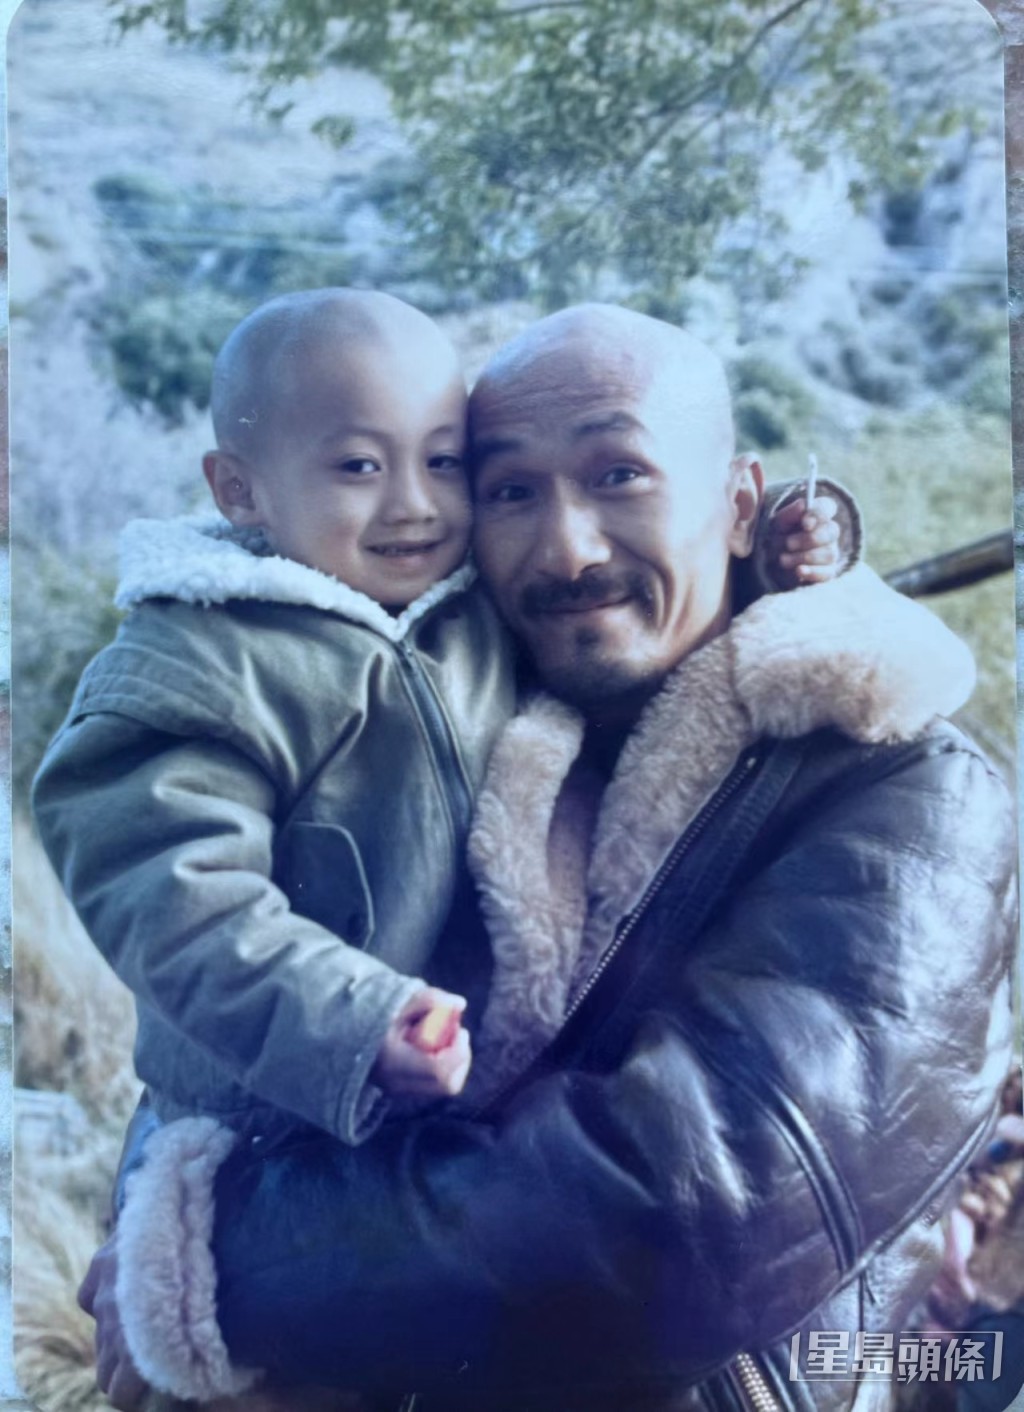 為配合演麥嘉兒子，王嘉明多次剃頭做「光頭仔」，好彩長大後頭髮好濃密。